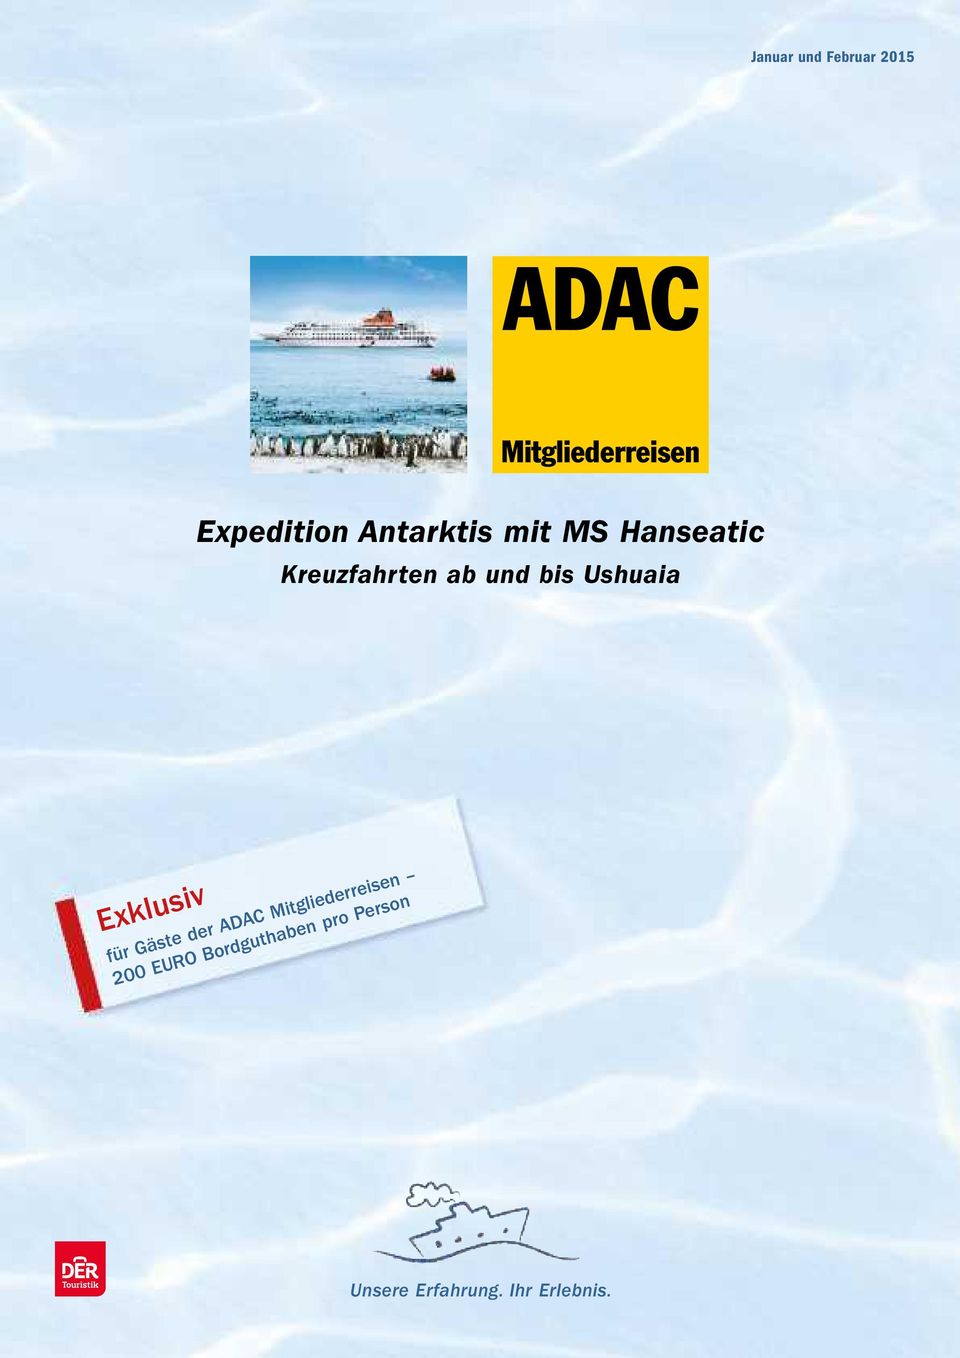 Exklusiv für Gäste der ADAC Mitgliederreisen 200